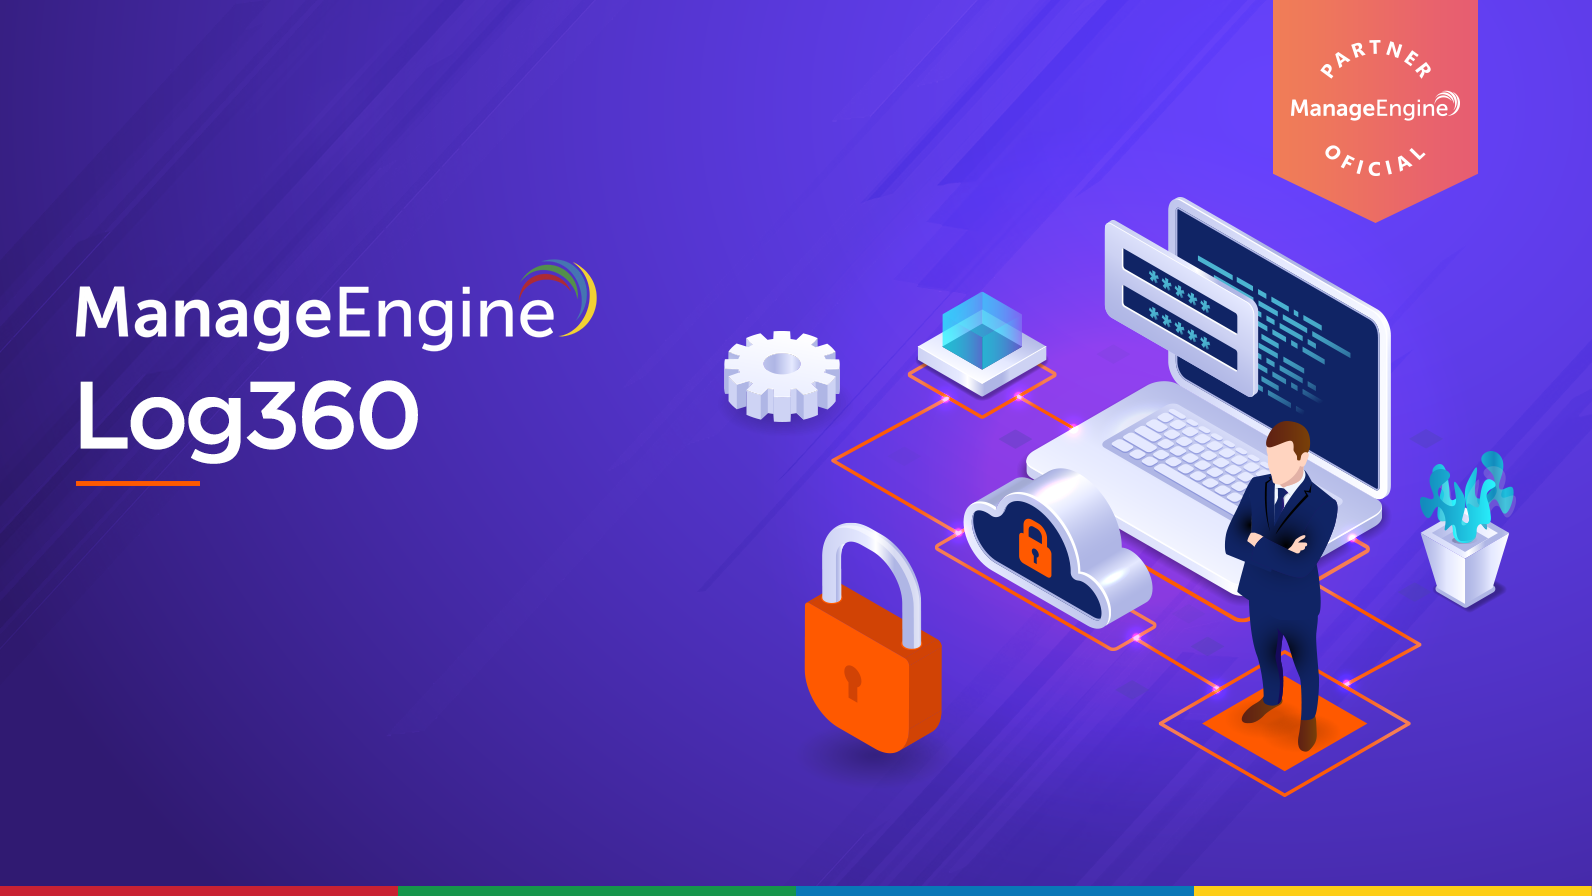 Imagen animada con un ingeniero una computadora un candado de seguridad y el título de Manage Engine Log360 como herramientas de registro y control de logs